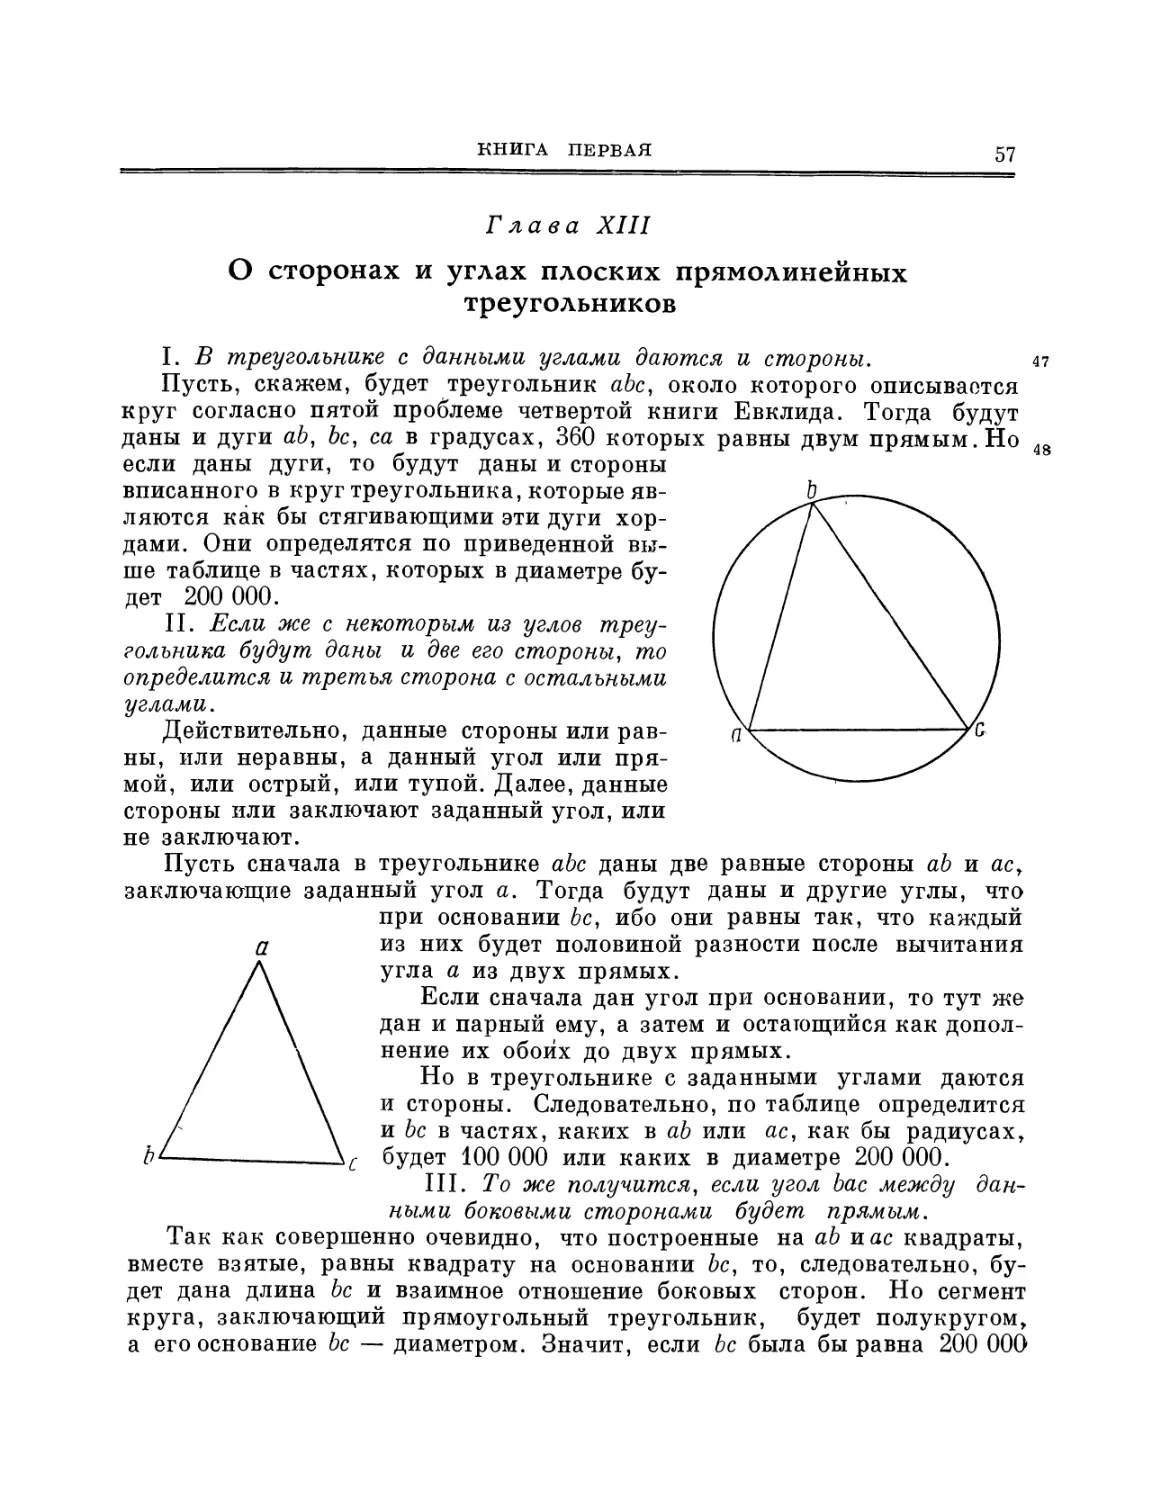 Глава XIII. О сторонах и углах плоских прямолинейных треугольников